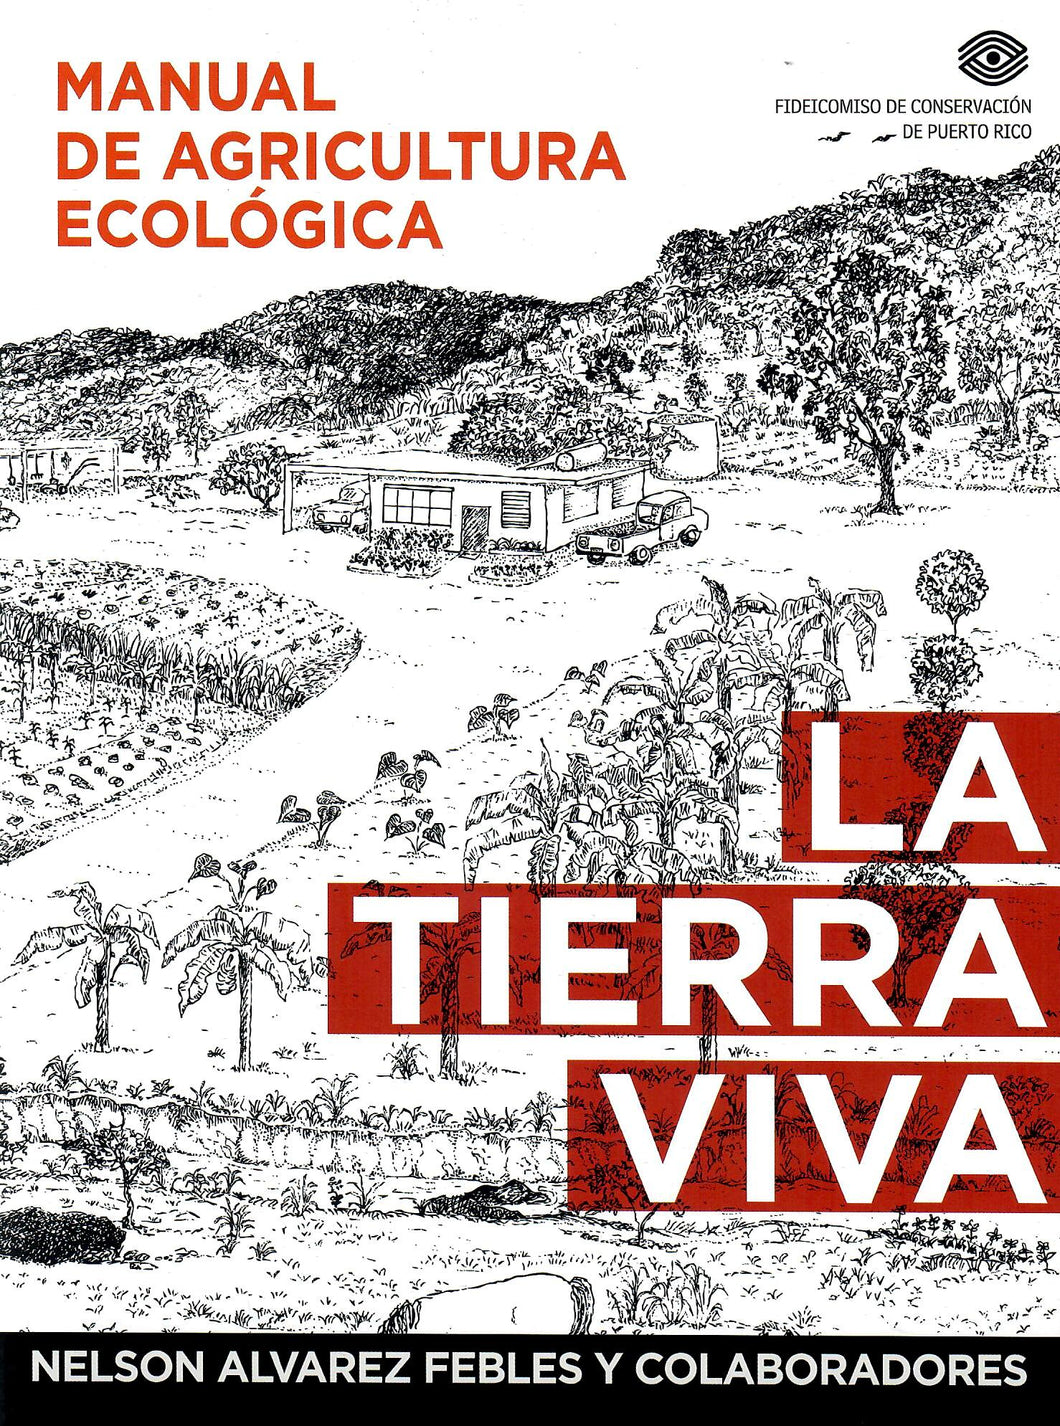 LA TIERRA VIVA: MANUAL DE AGRICULTURA ECOLÓGICA - Nelson Álvarez Febles y colaboradores